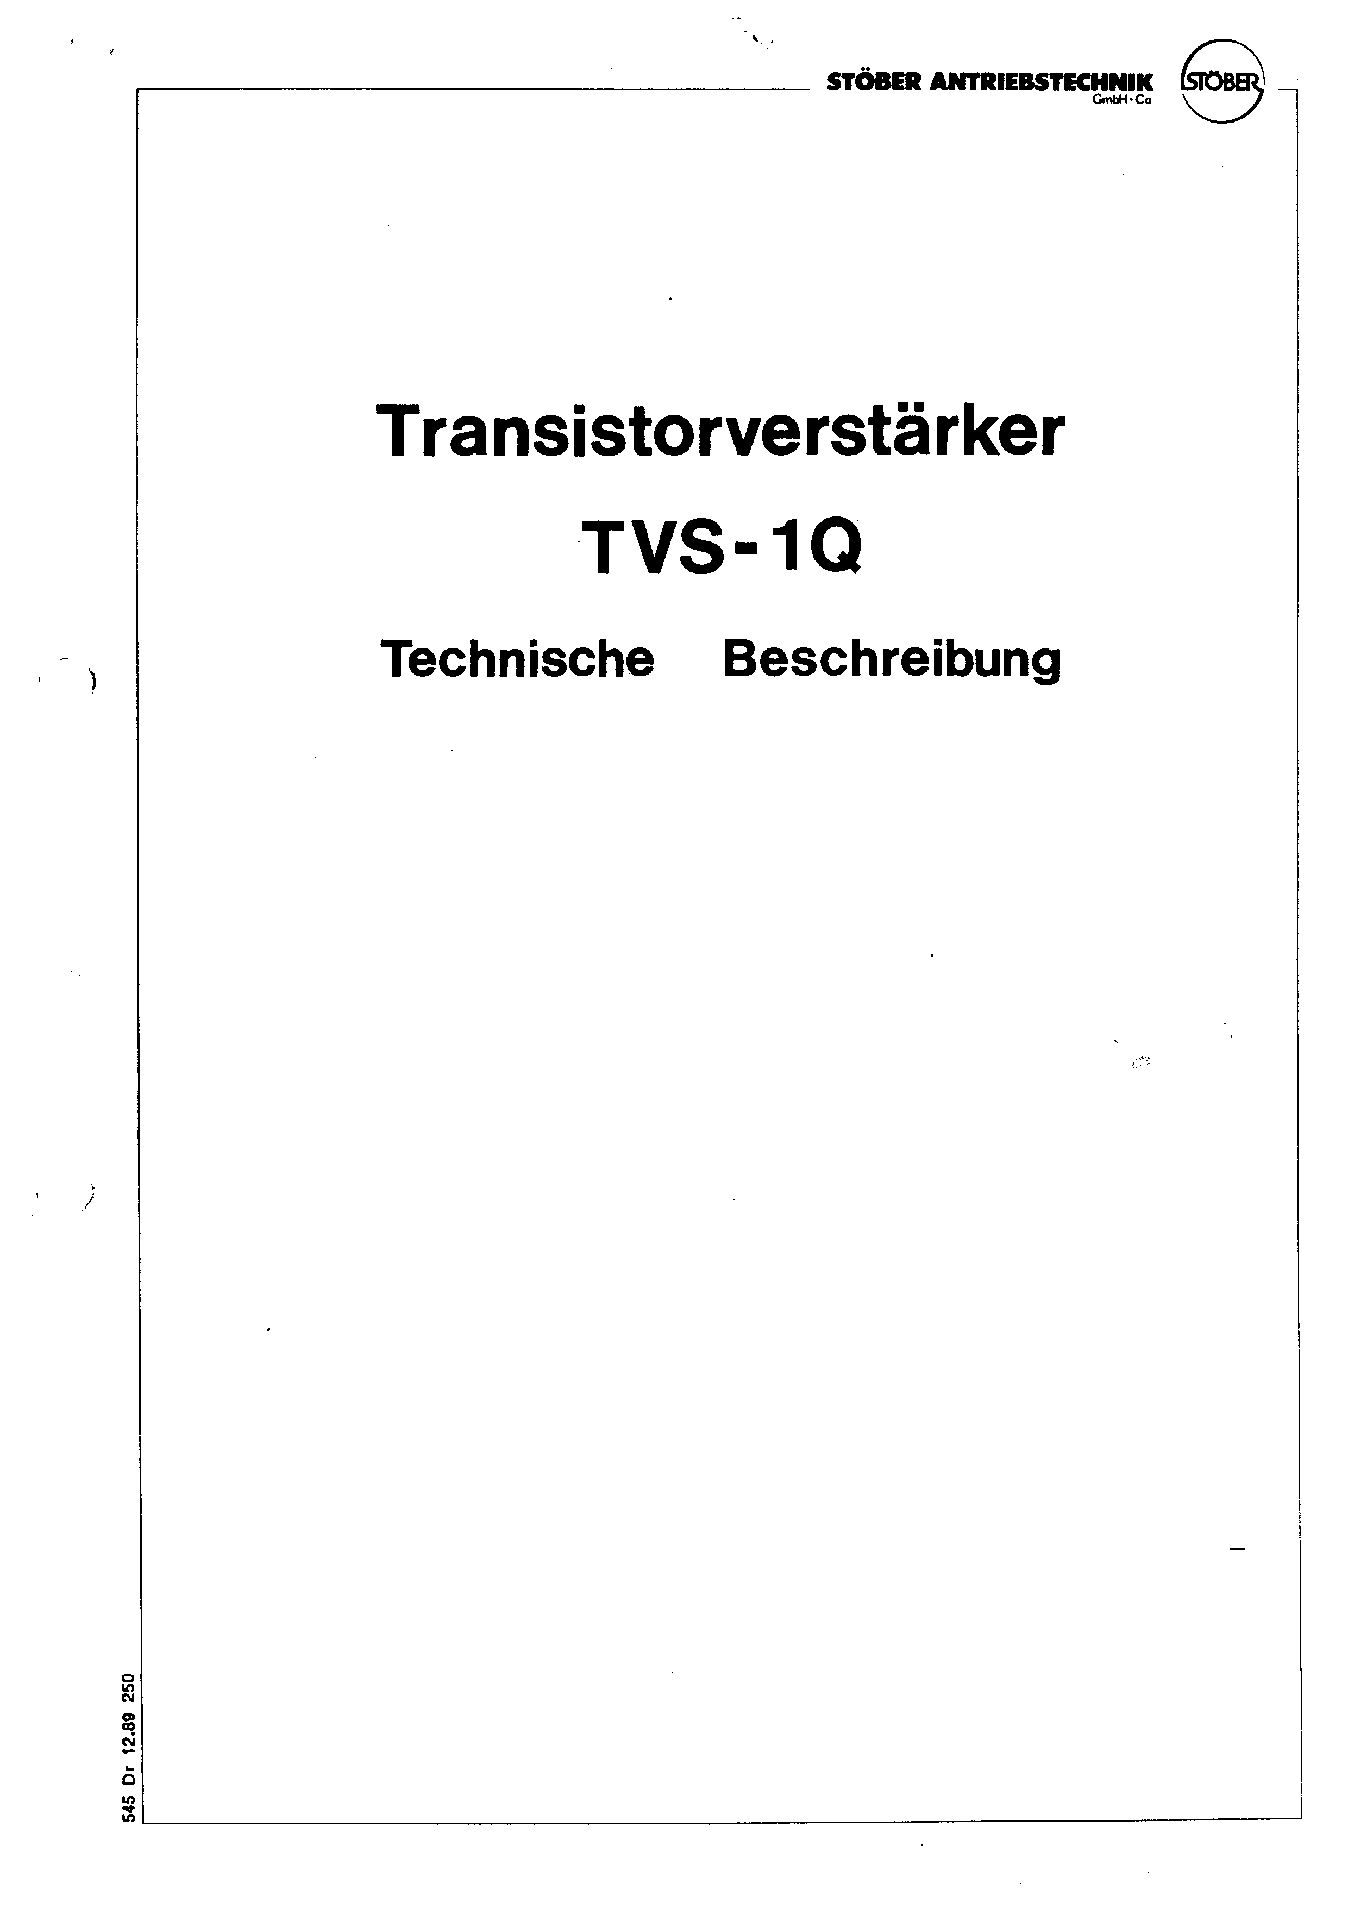 Dokumentation Transistorverstärker TVS-1Q